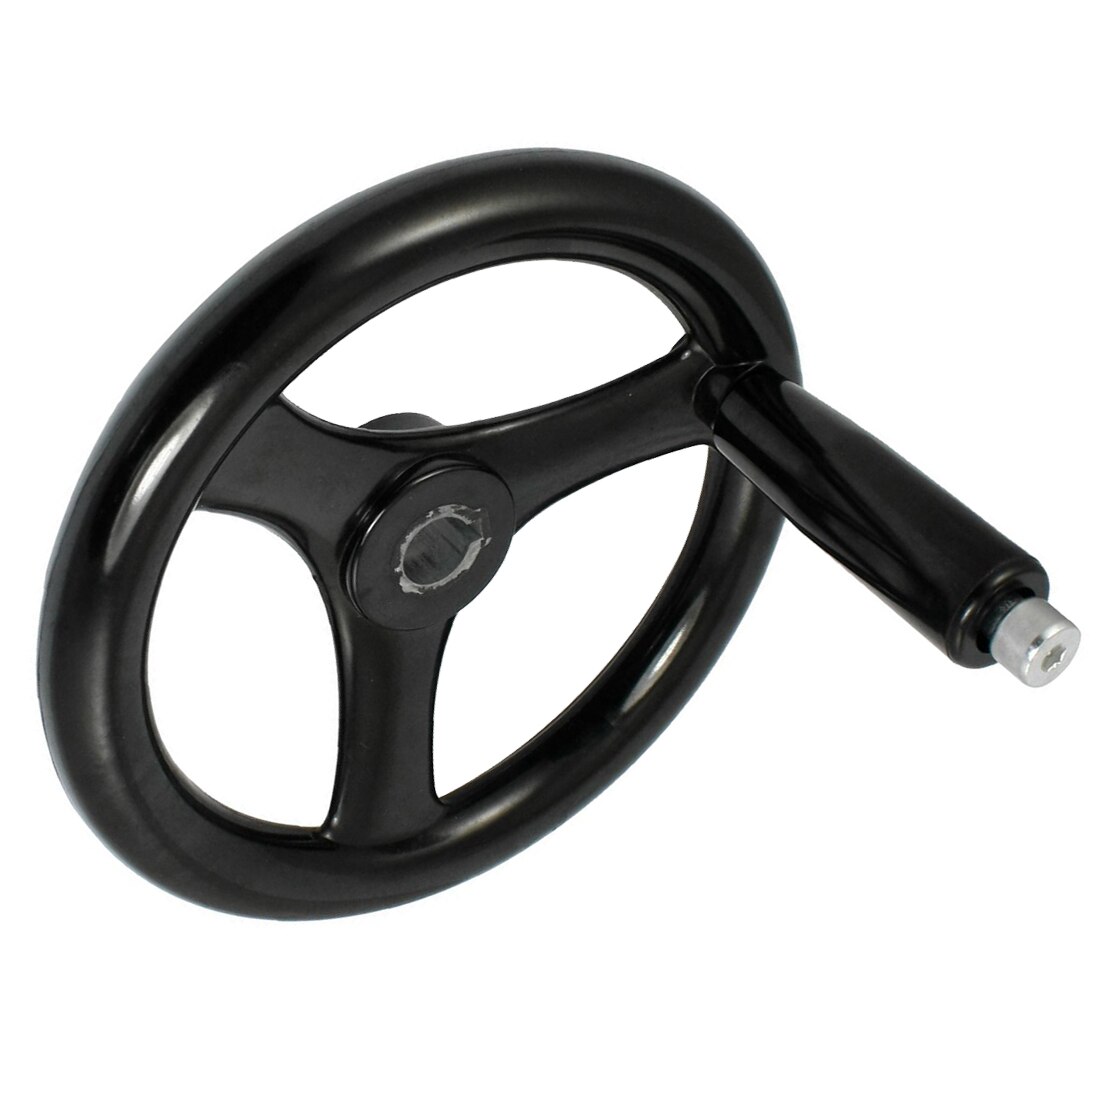 Gtbl sort 18mm x 200mm 3 eger håndhjul med roterende håndtag